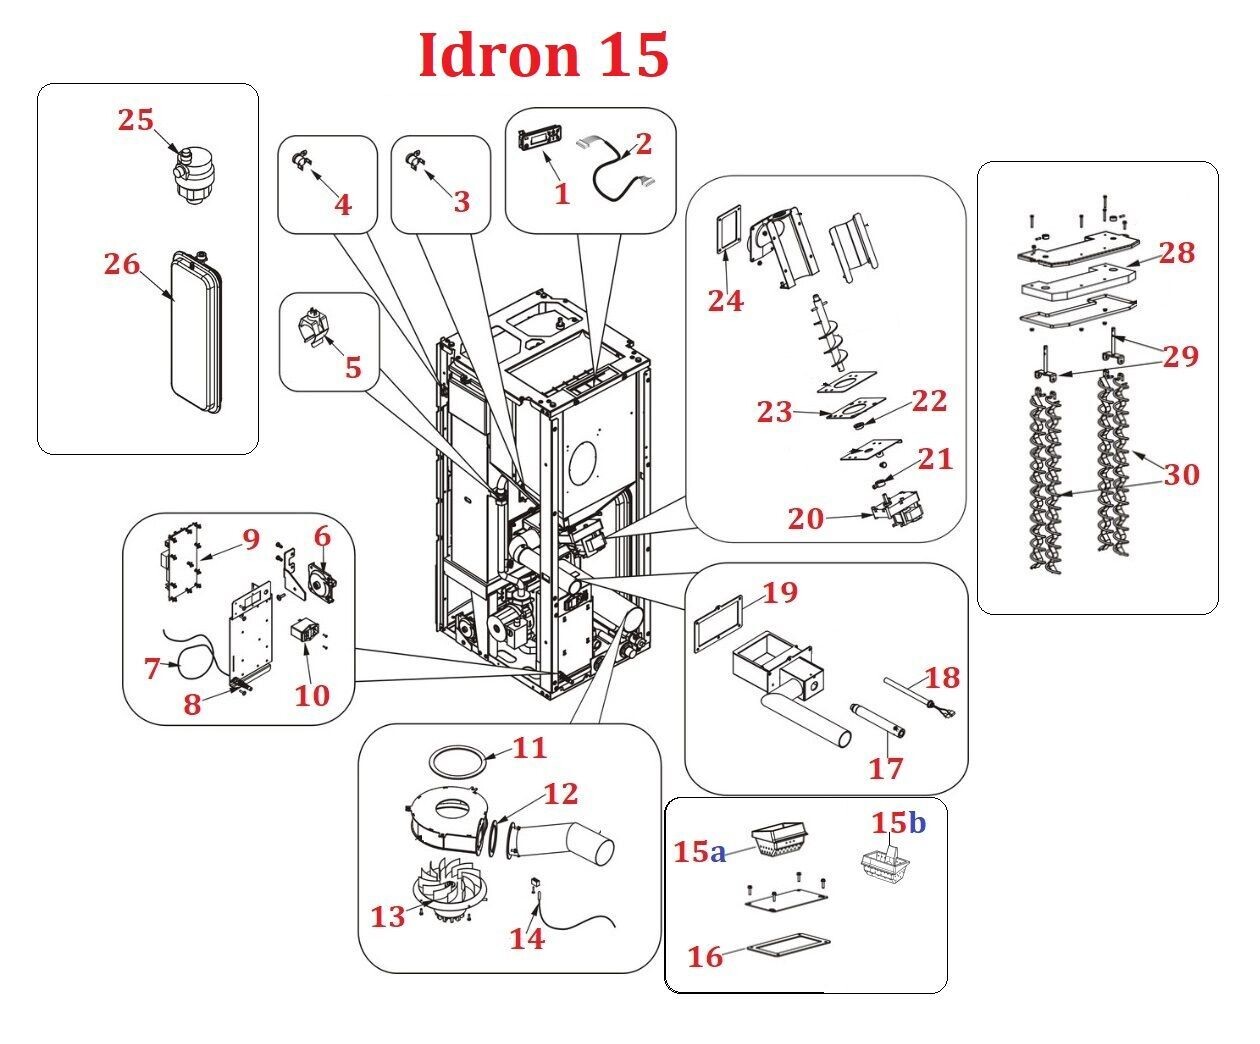 Idron 15